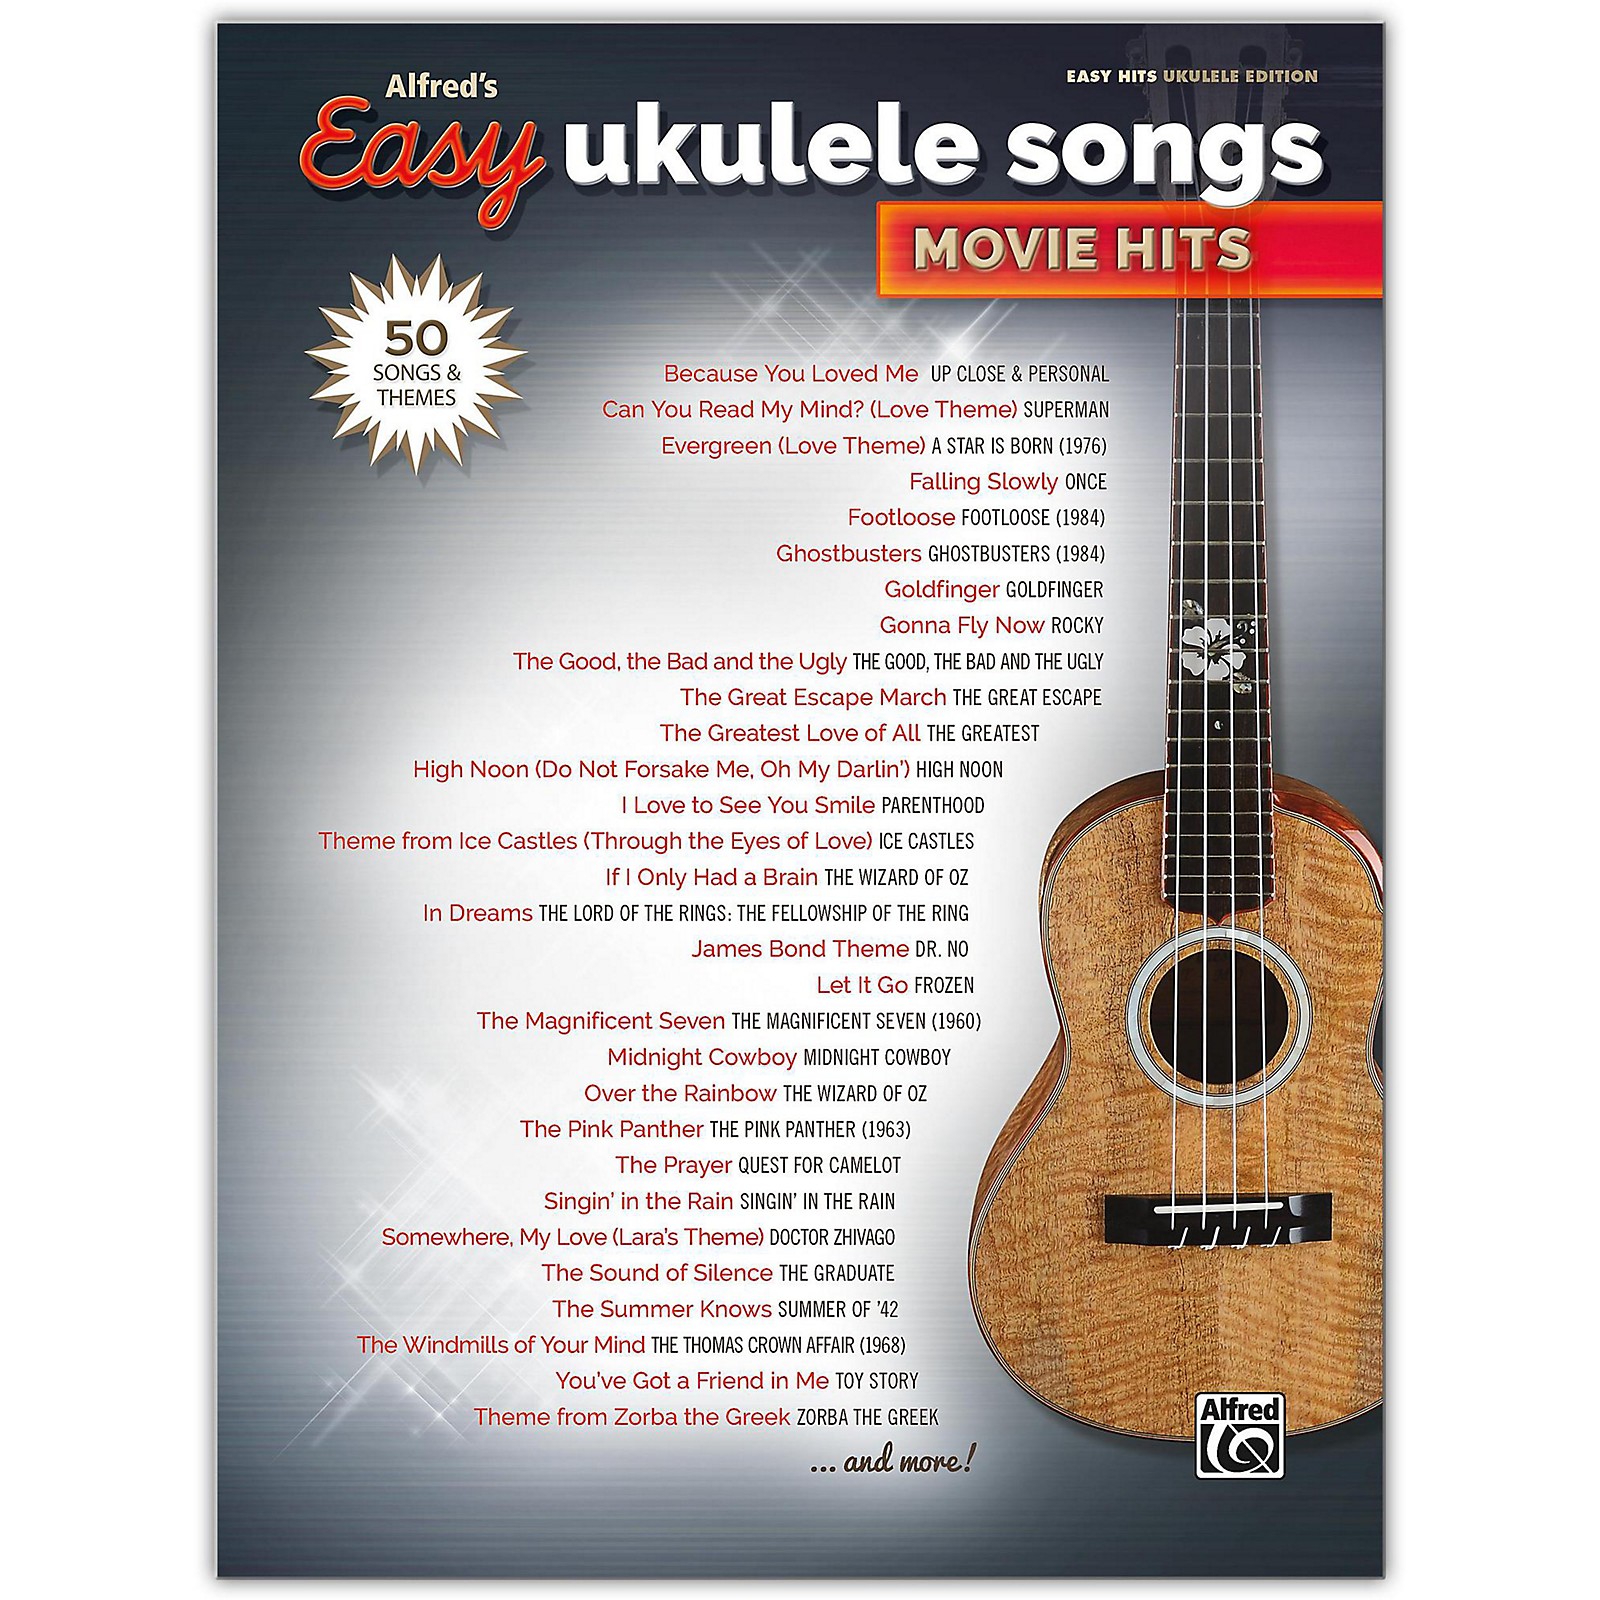 Borns - electric love  Ukulele songs, Ukulele chords, Ukulele